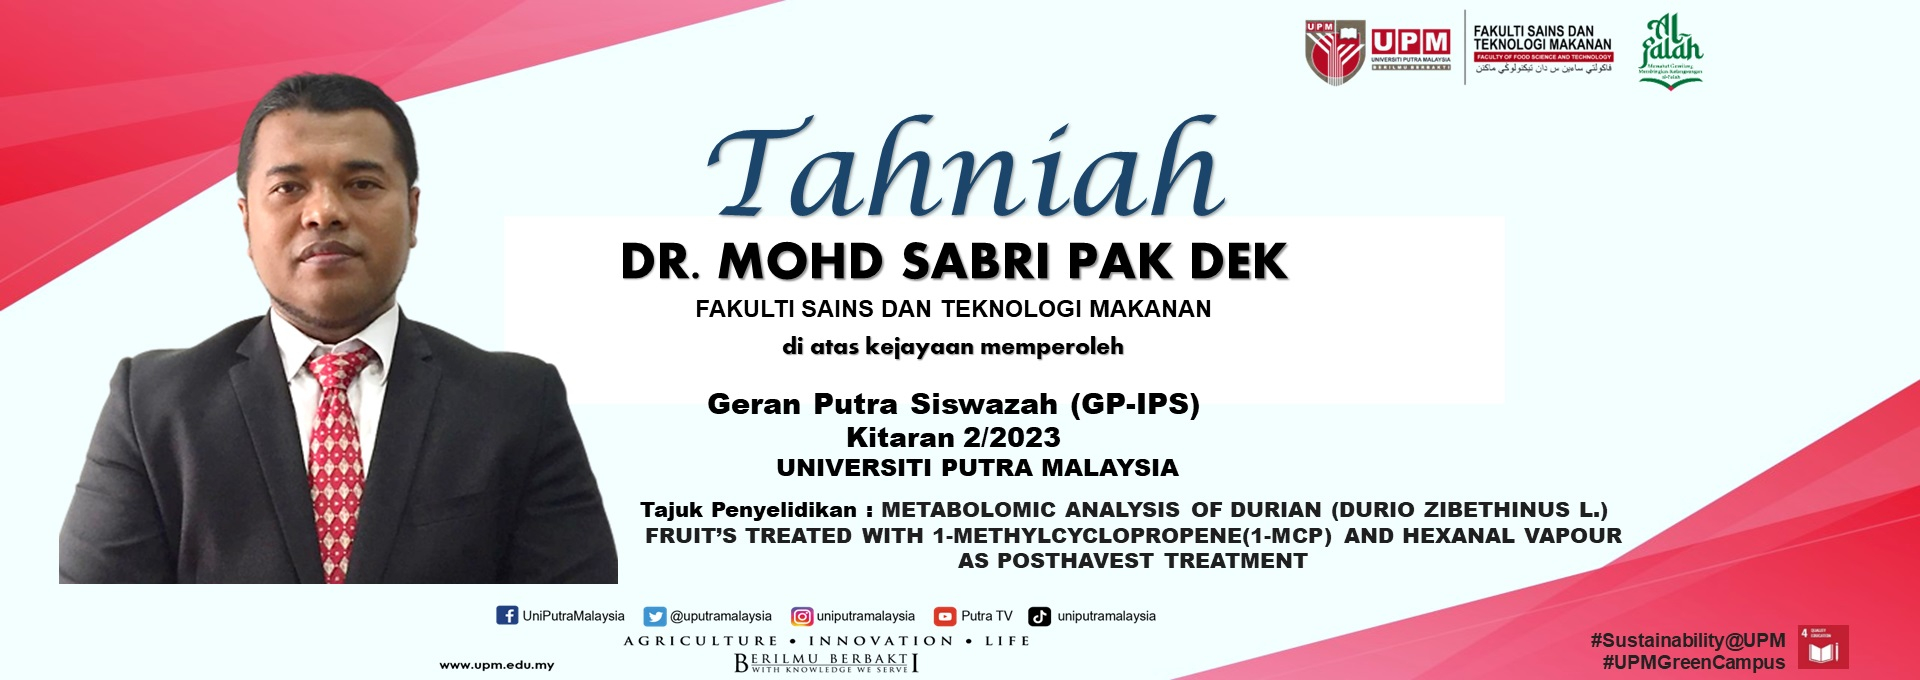 Tahniah Dr. sabri